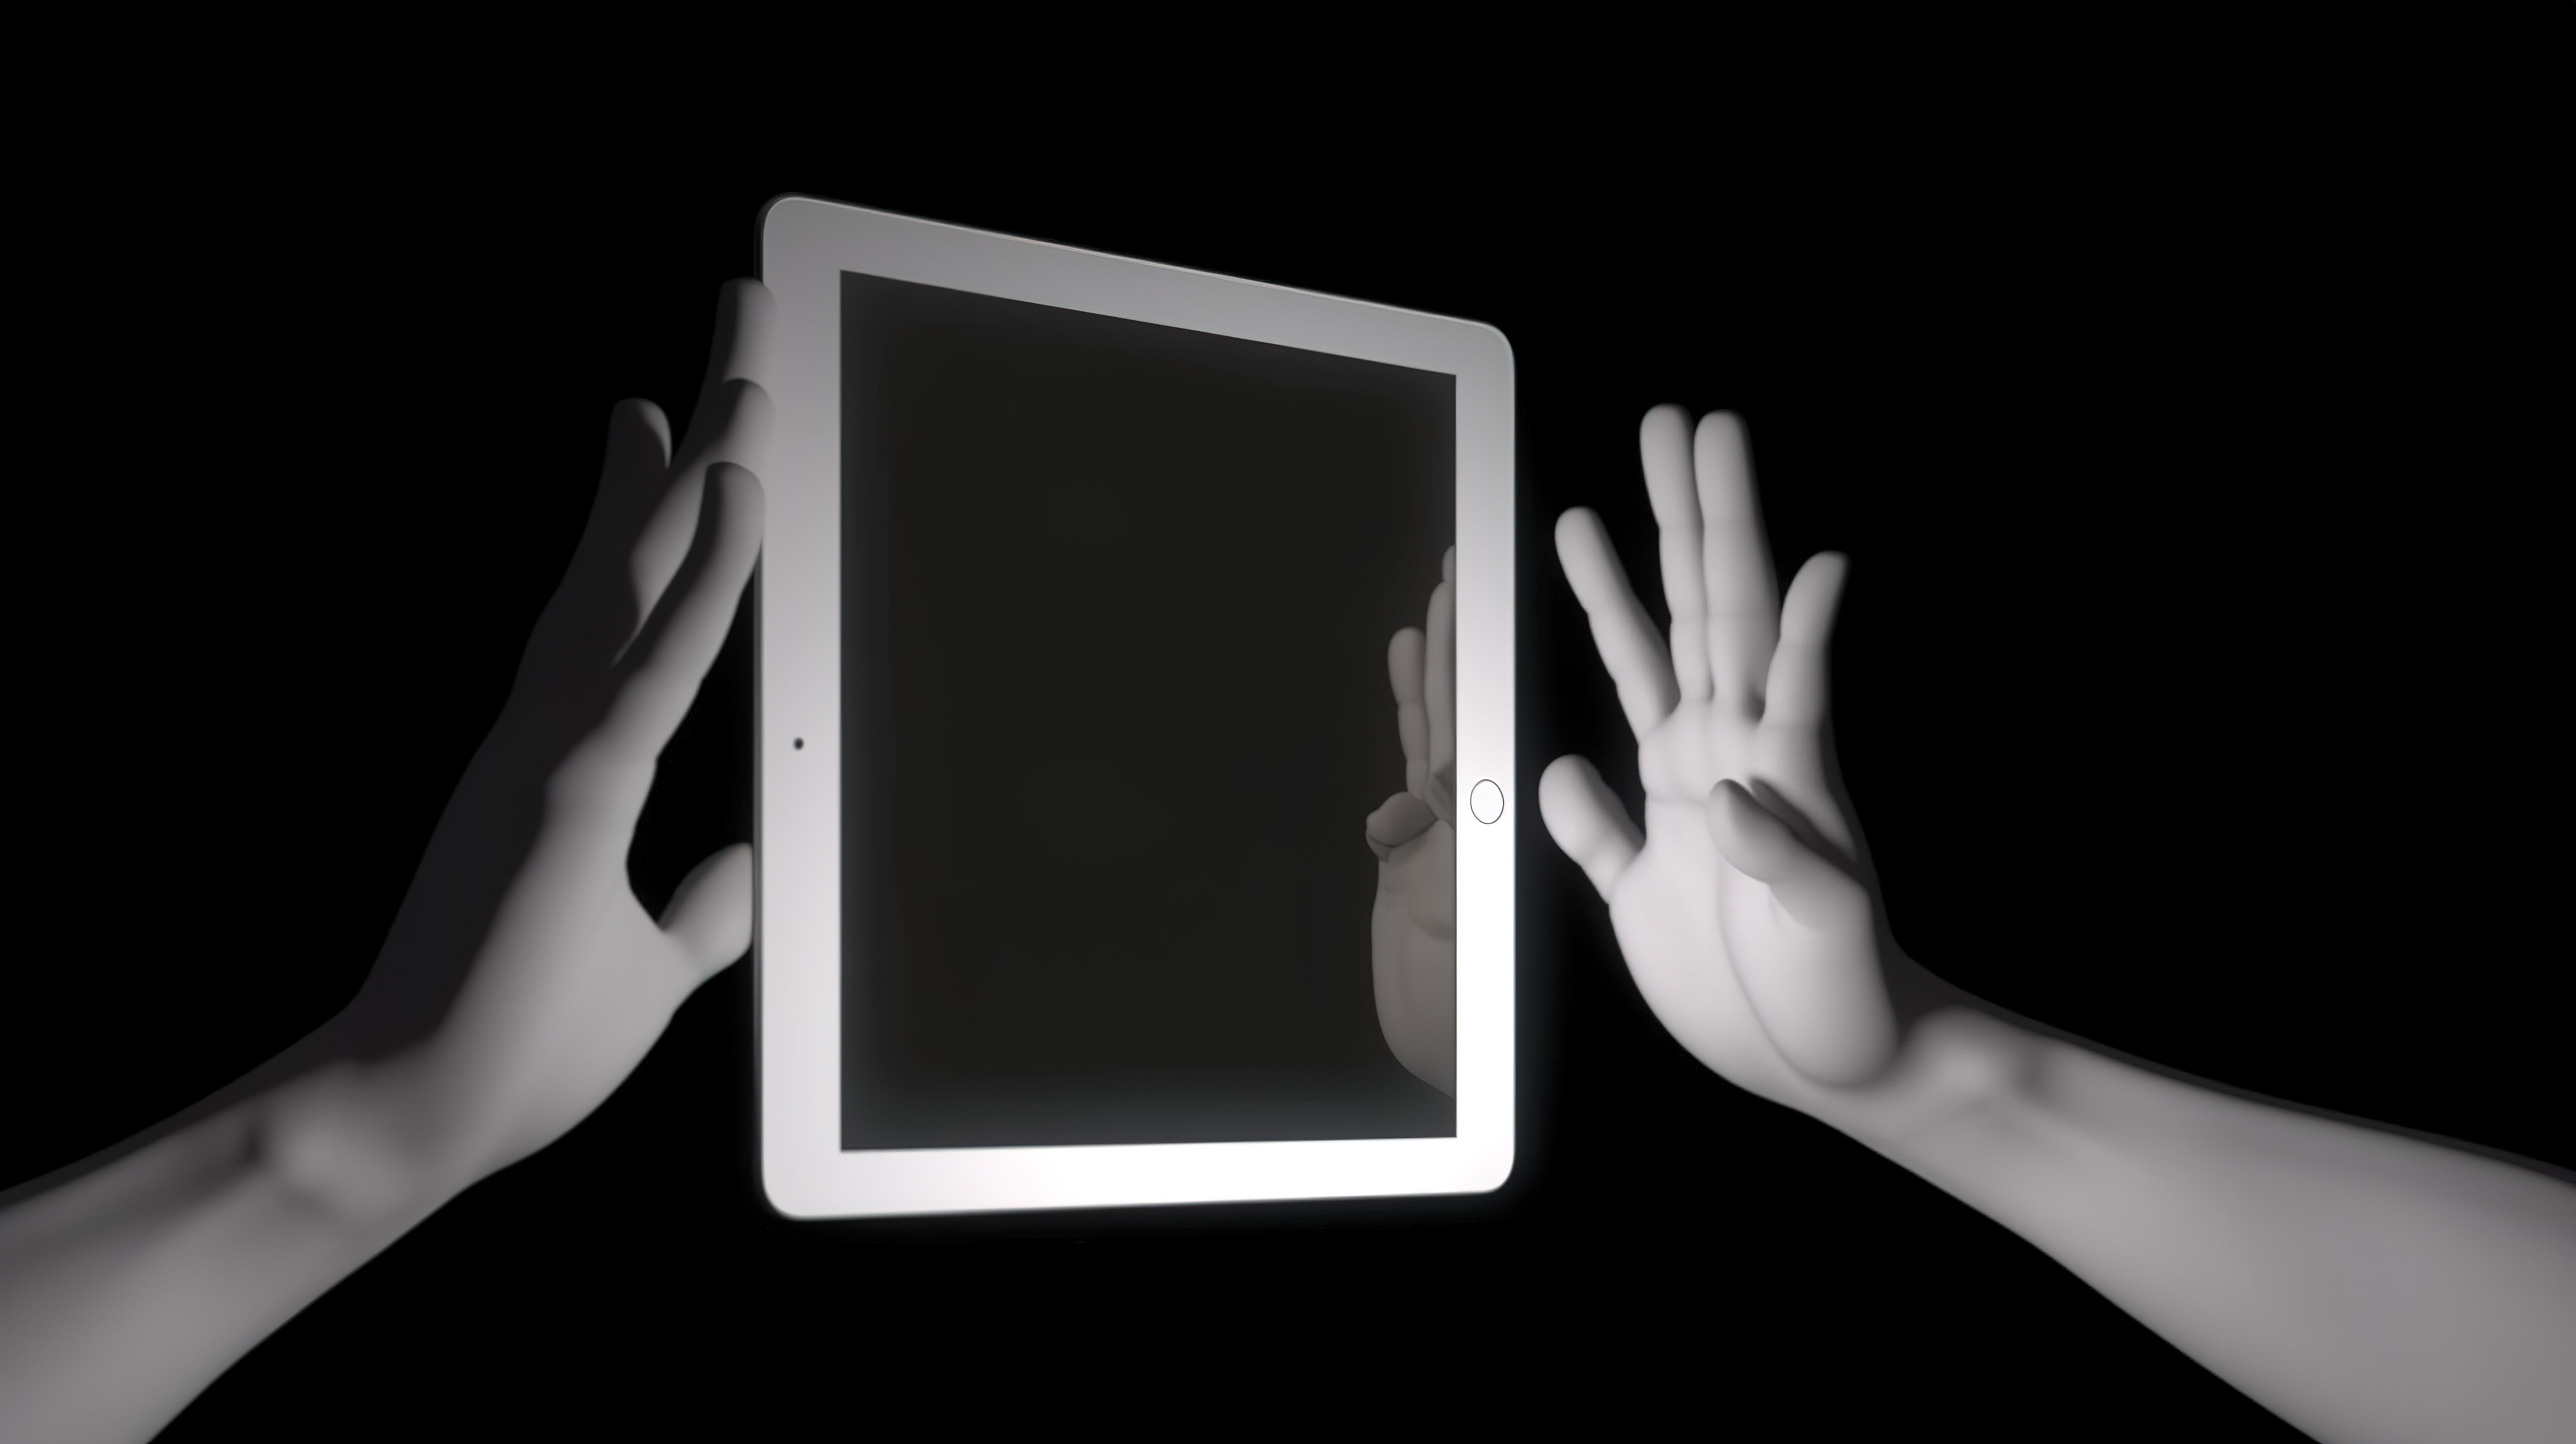 3D 动画手在纵向模式下握住平板电脑，而另一只手则点击屏幕中心图片